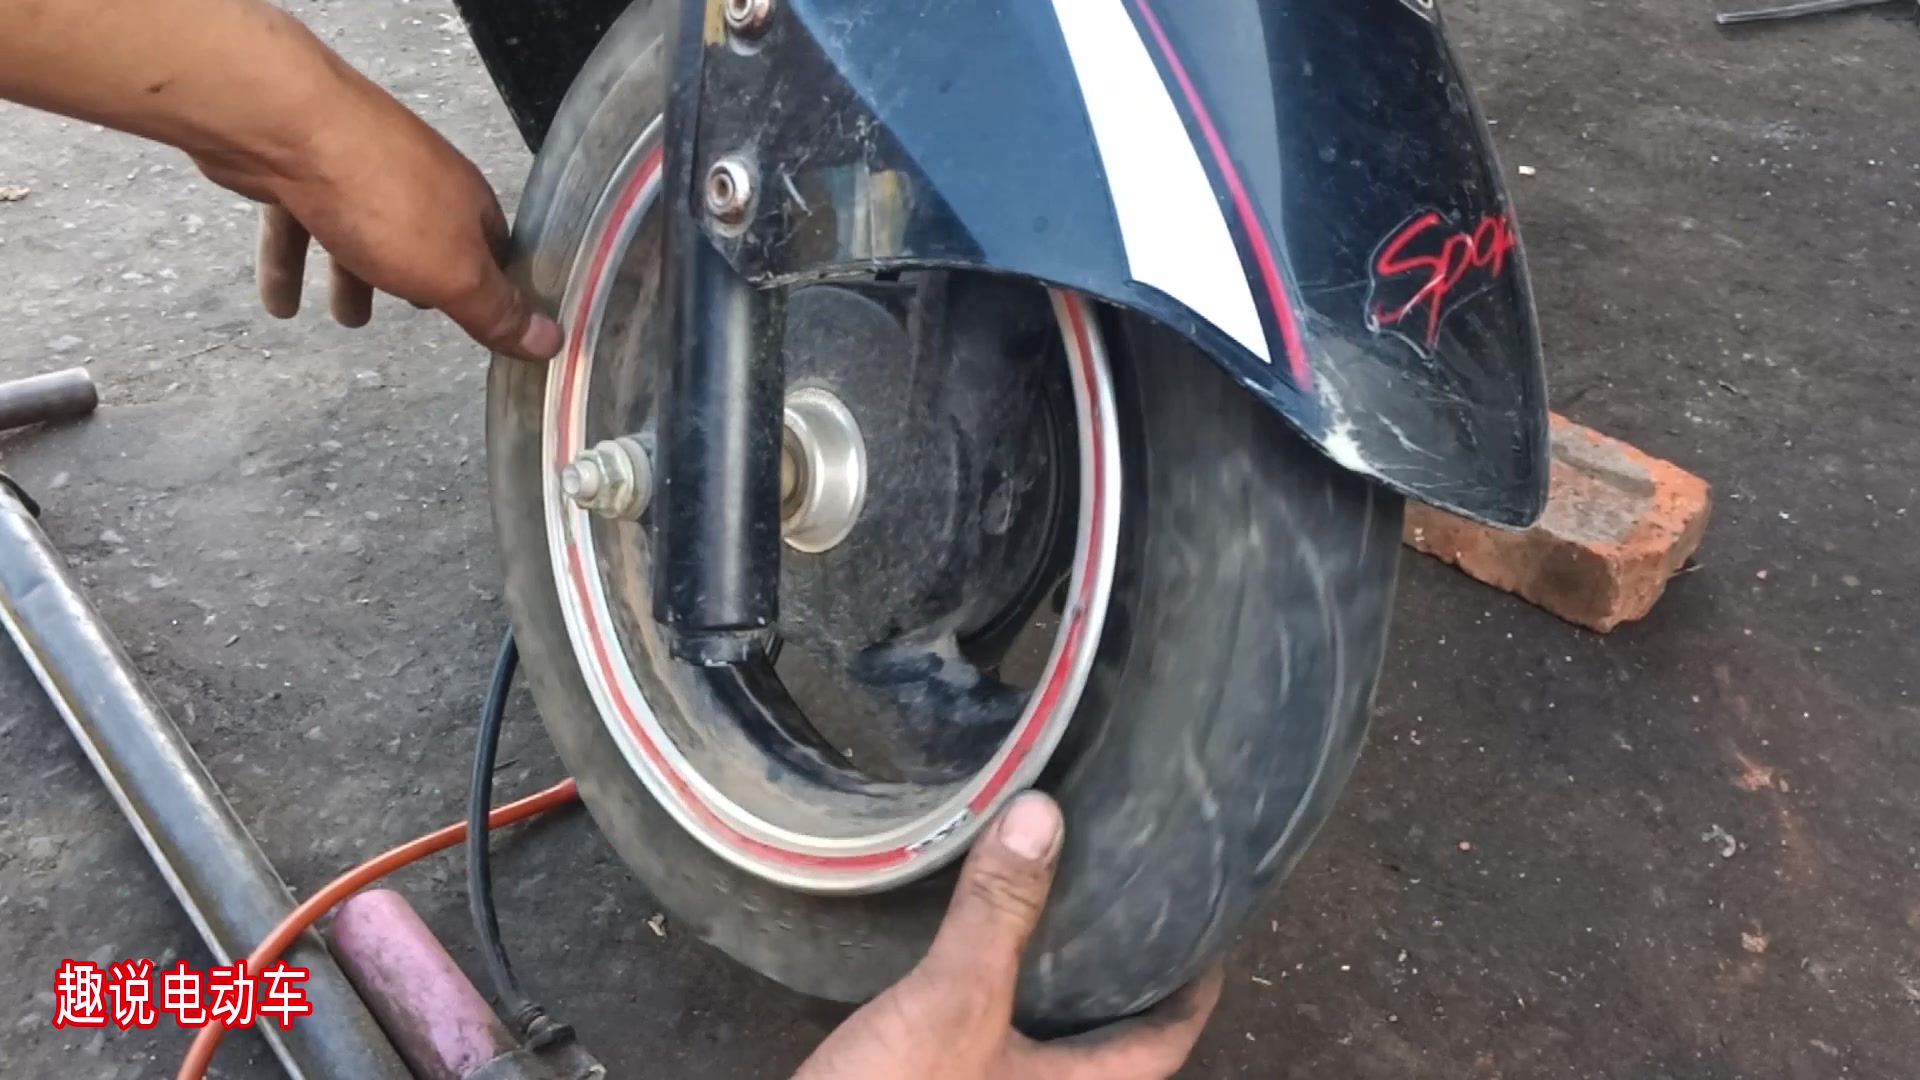 5秒安装真空胎 BETO真空胎专用打气筒评测 - 美骑网|Biketo.com